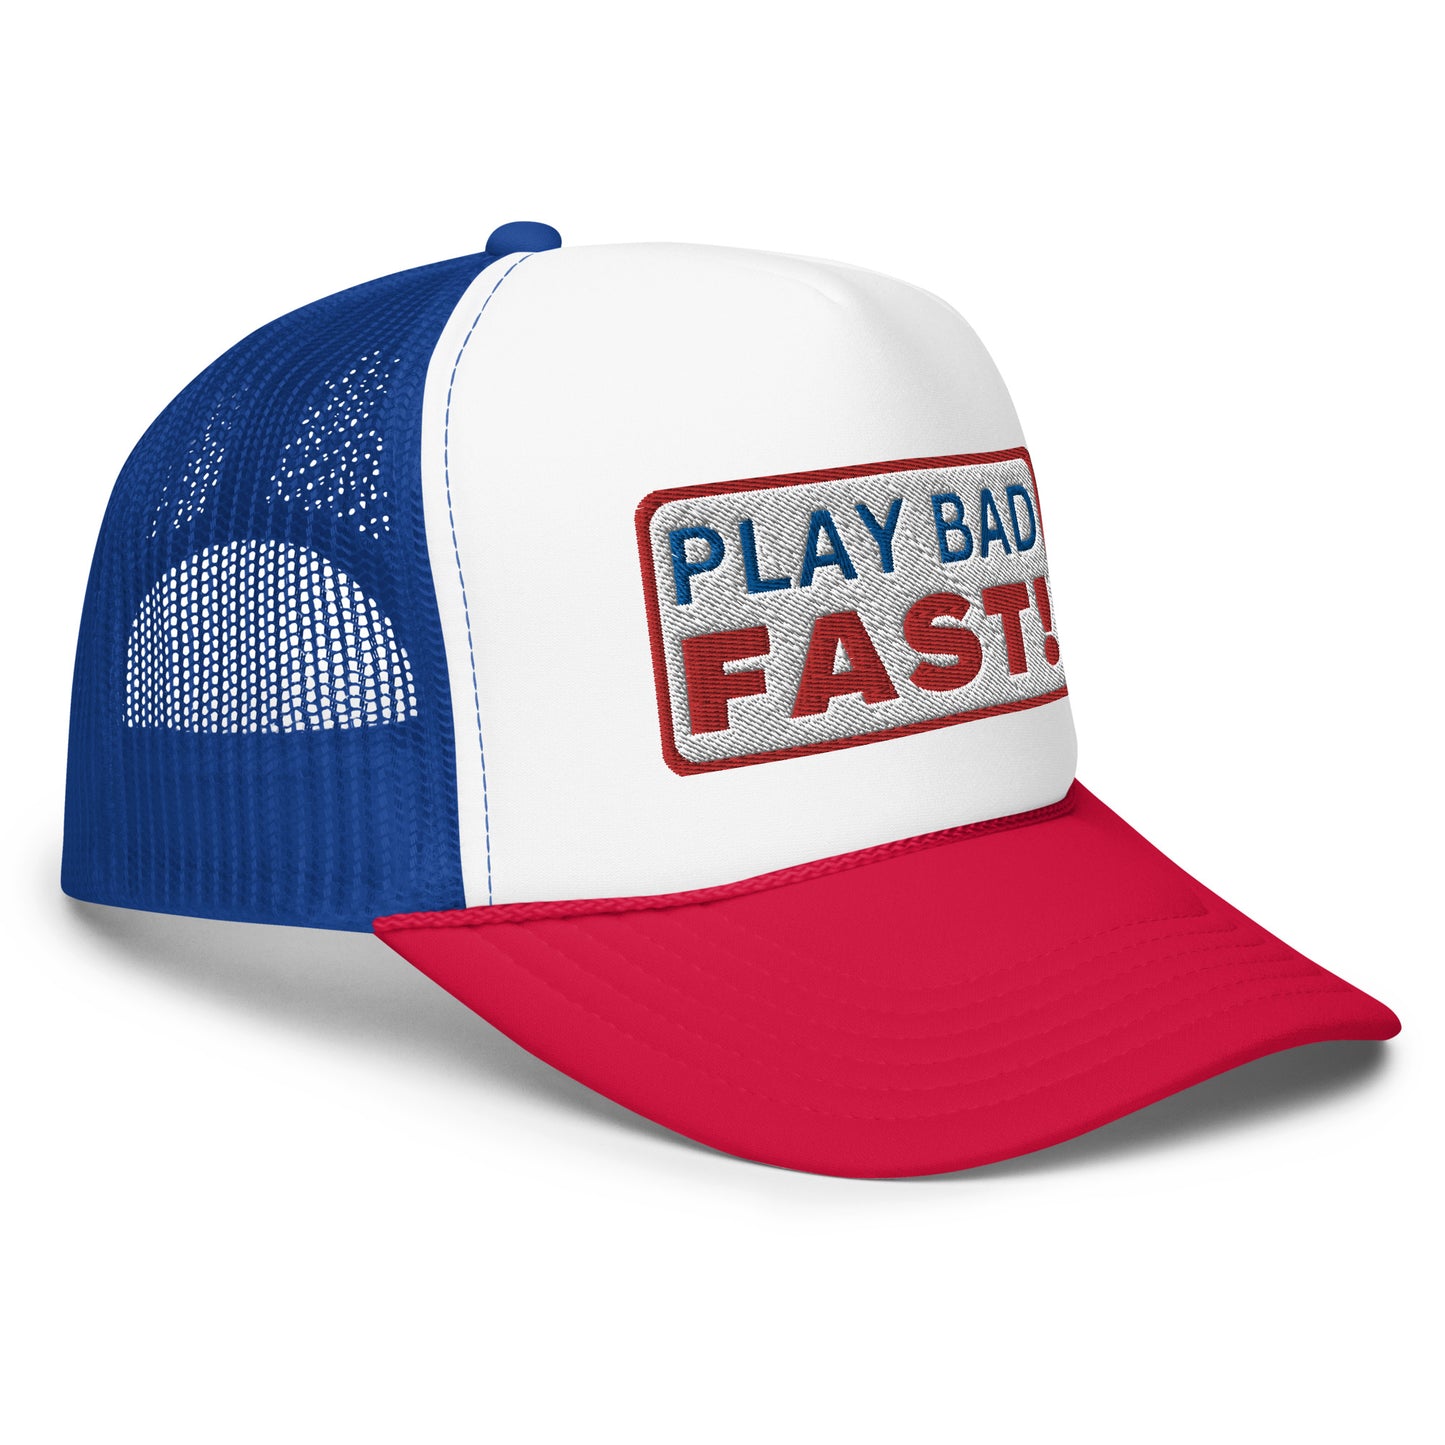 Play Bad Fast Foam Trucker Hat(NEW)